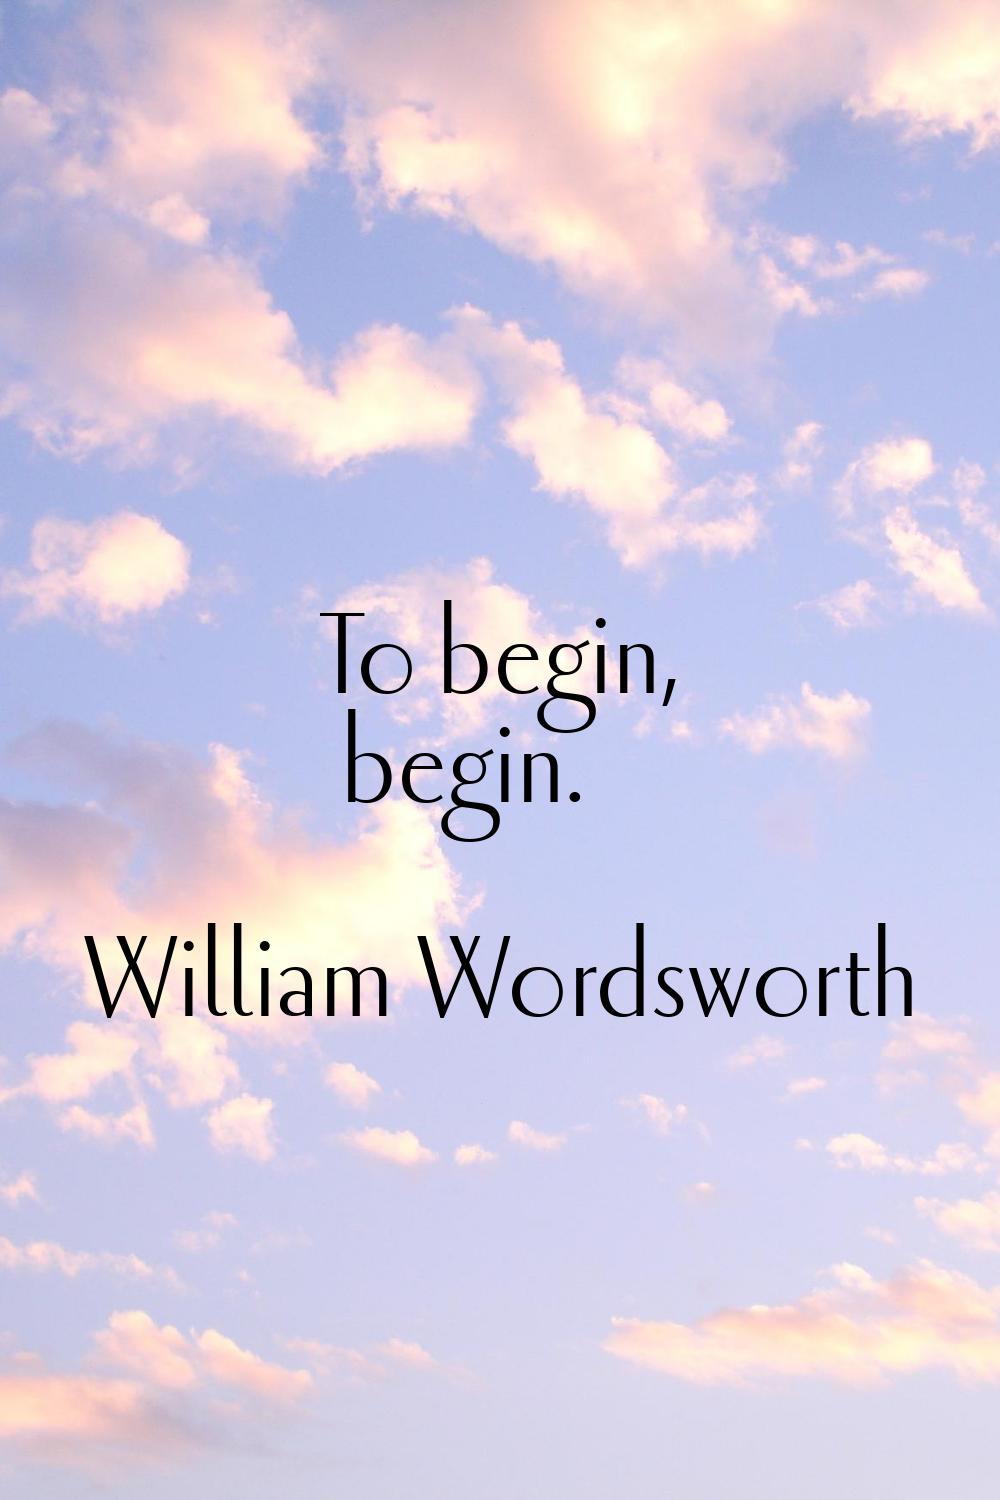 To begin, begin.